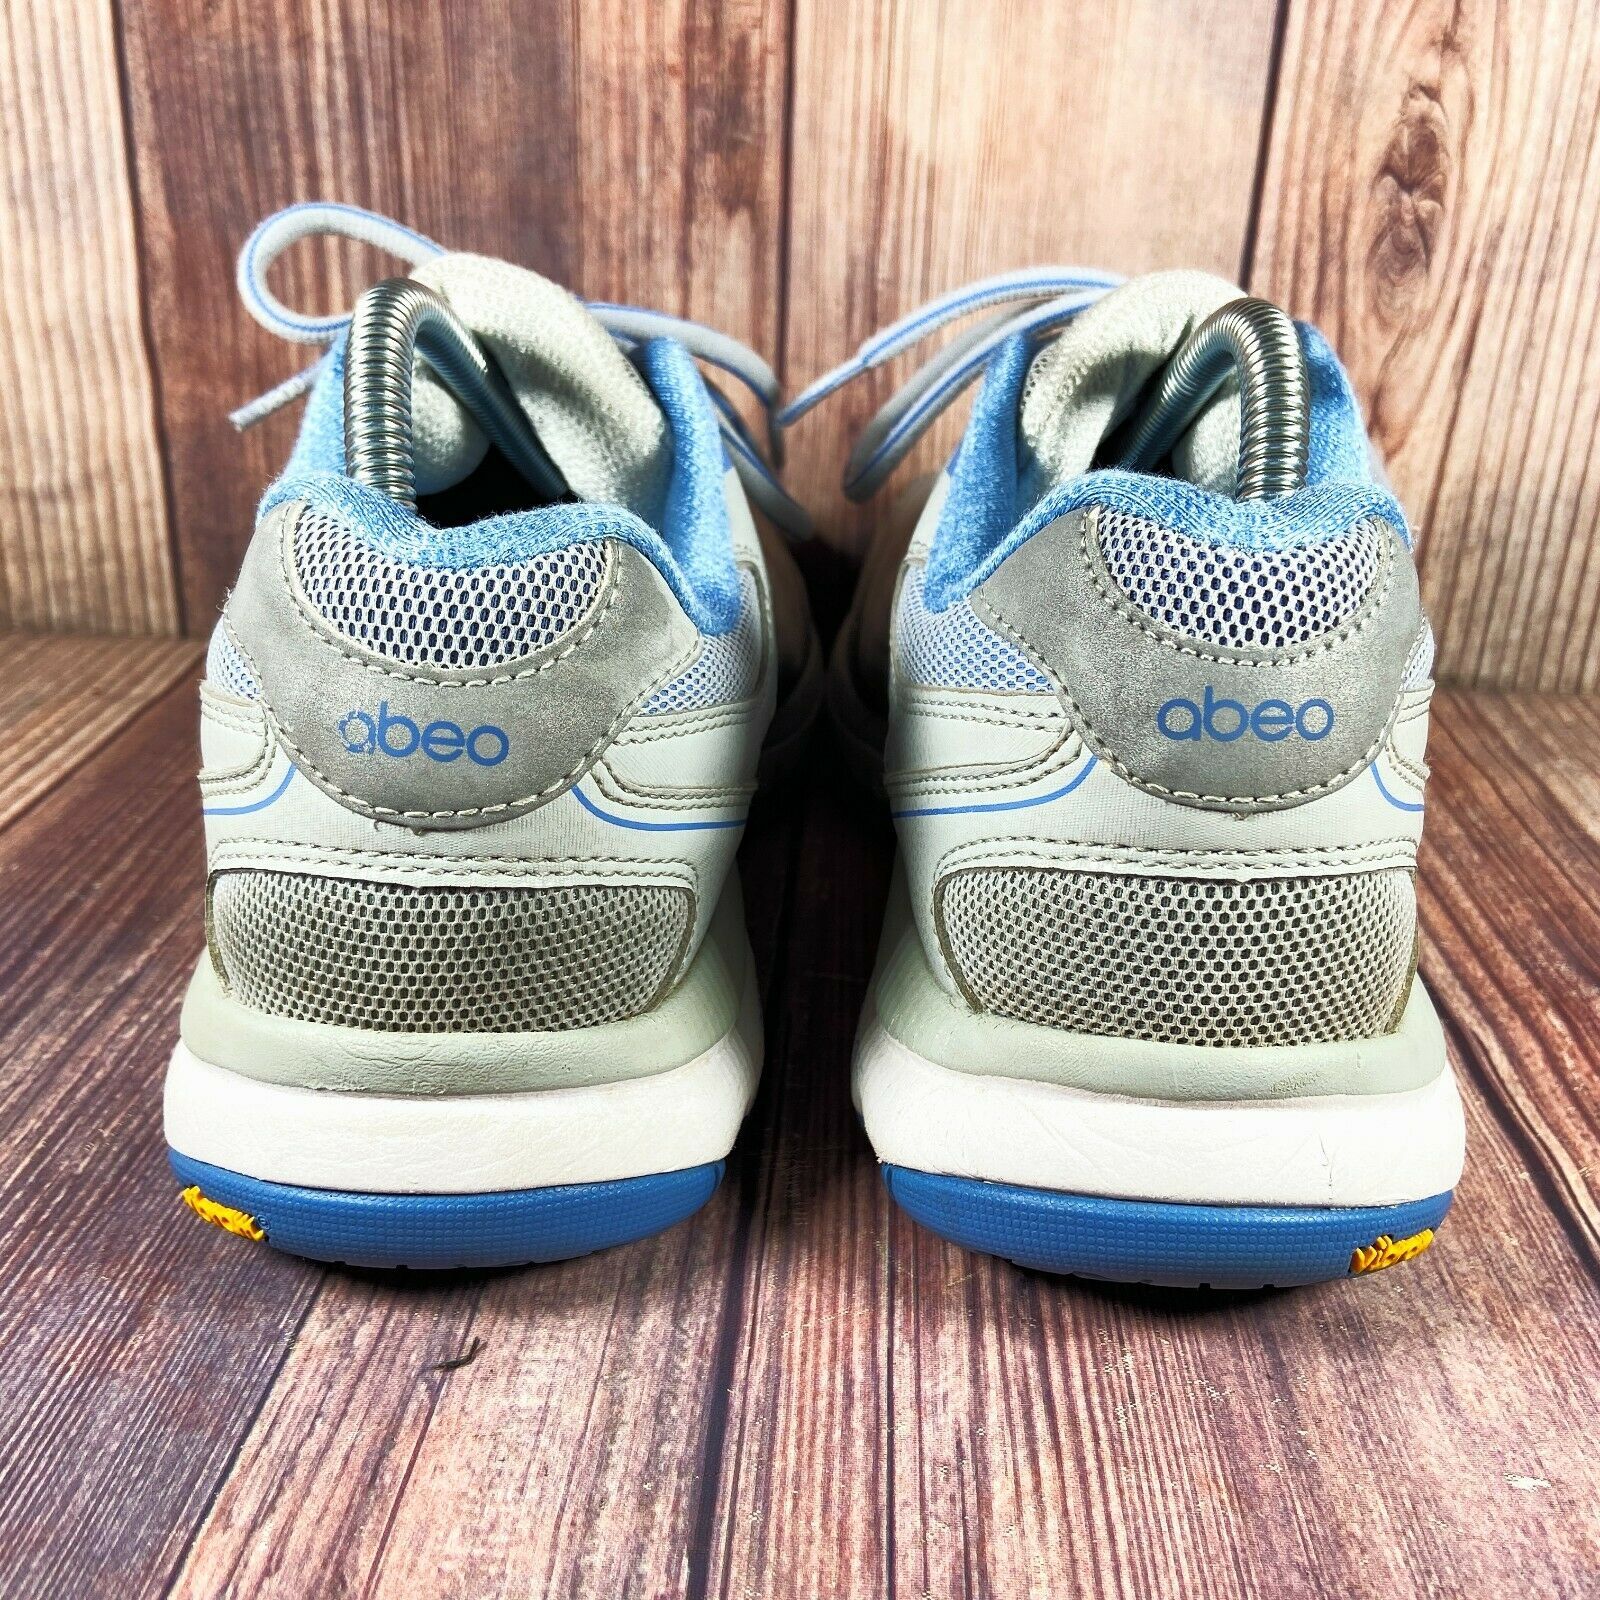 Abeo Aero 2.0 Orthotic Walking Shoes Vibram and similar items